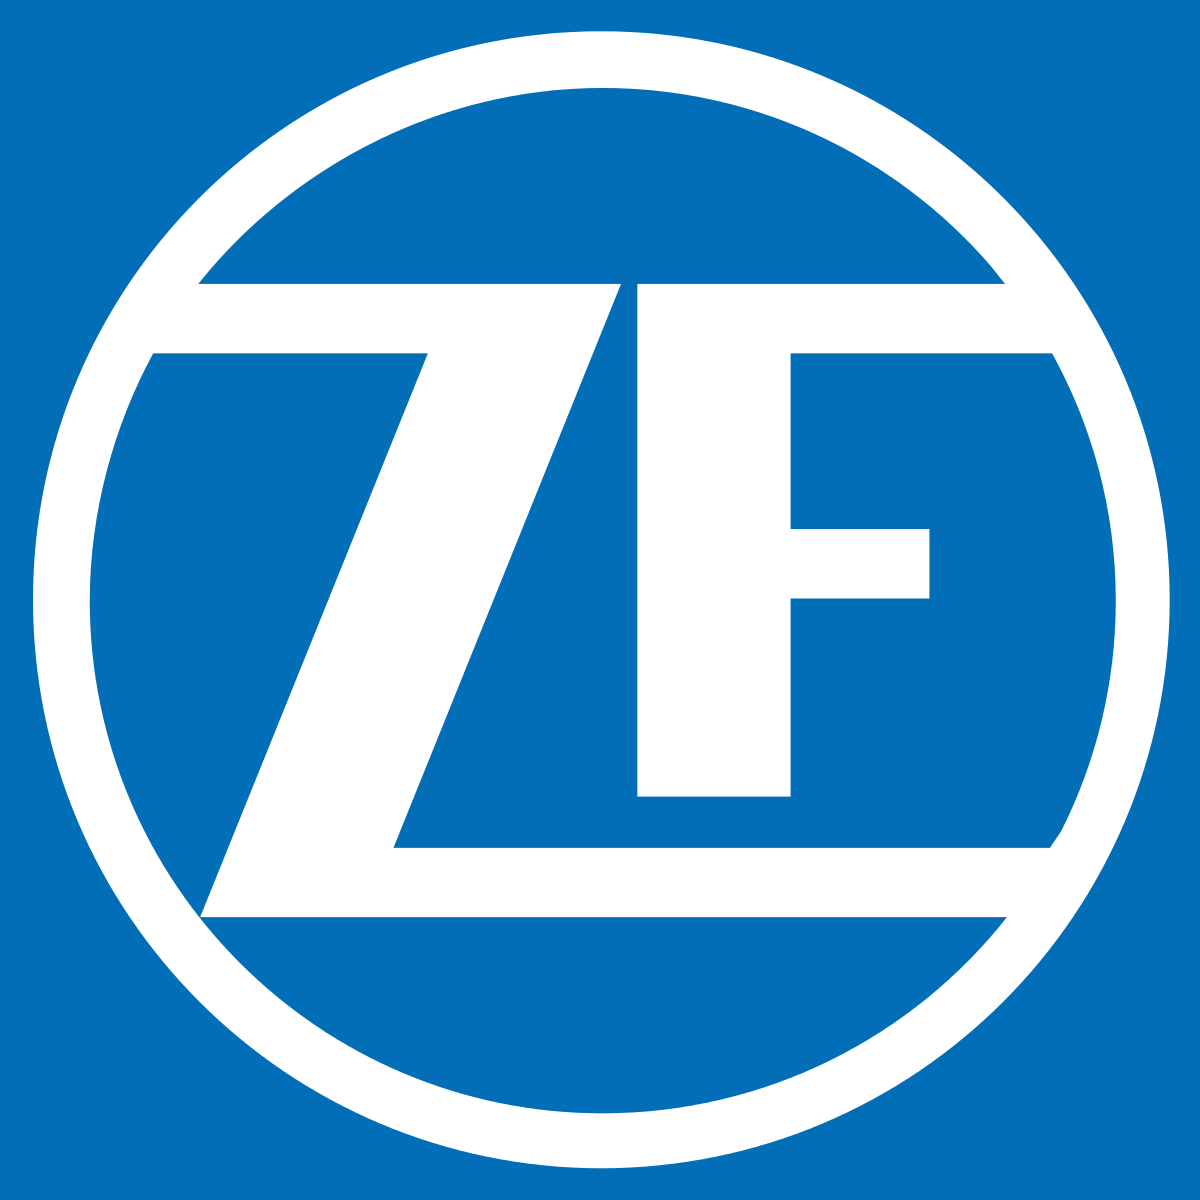 New ZF Logo - ZF Friedrichshafen